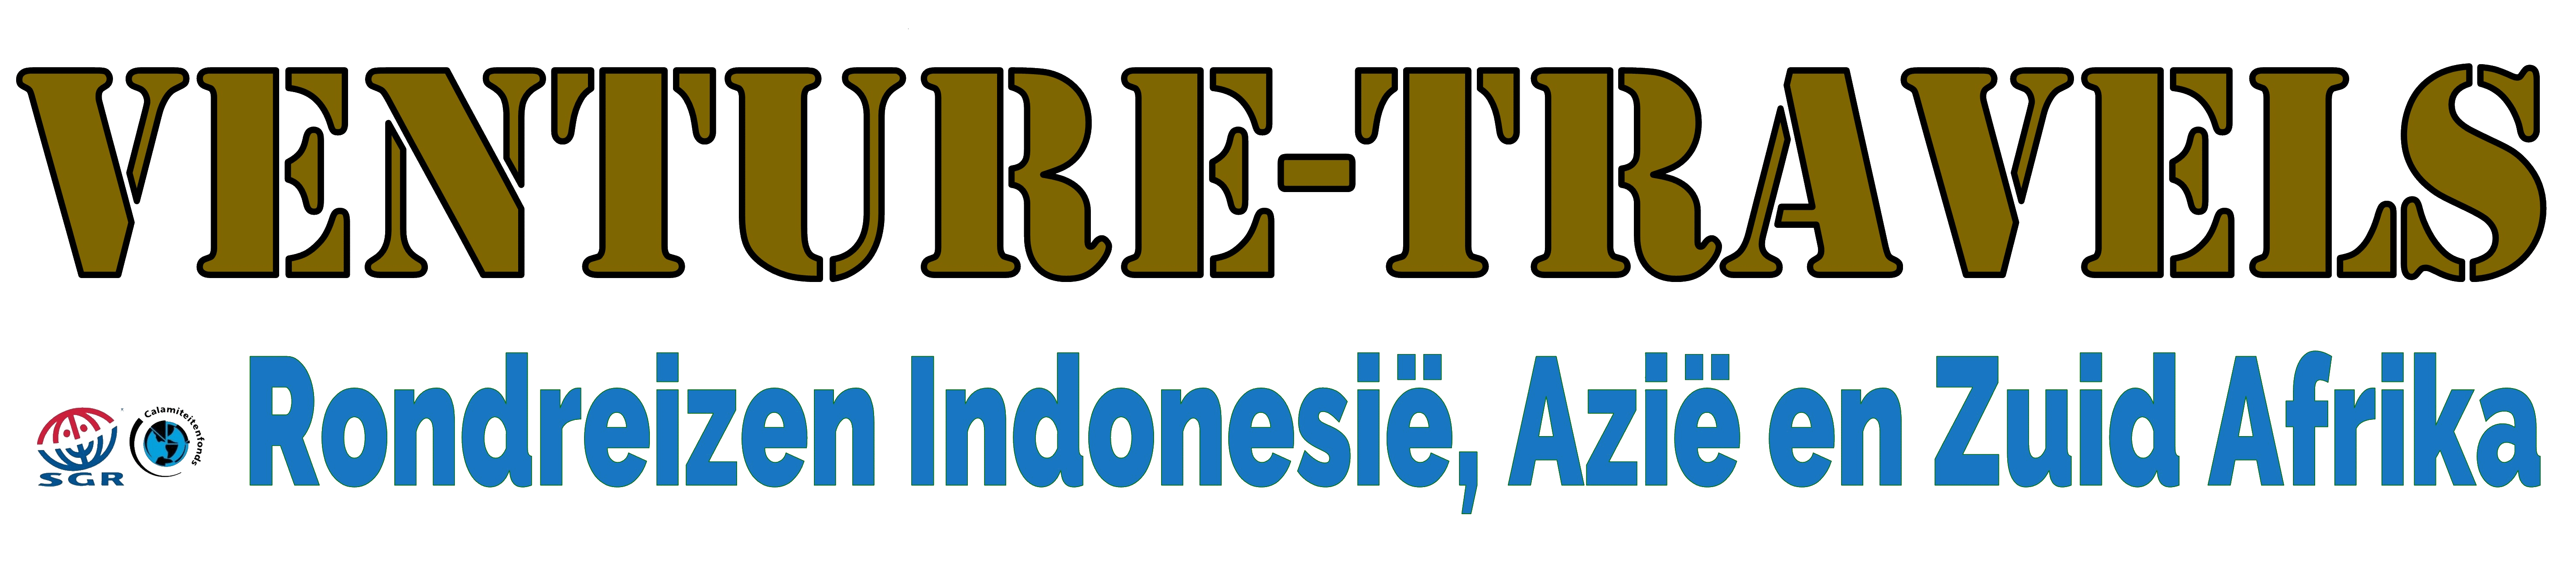 Rondreizen Indonesie| Venture travels